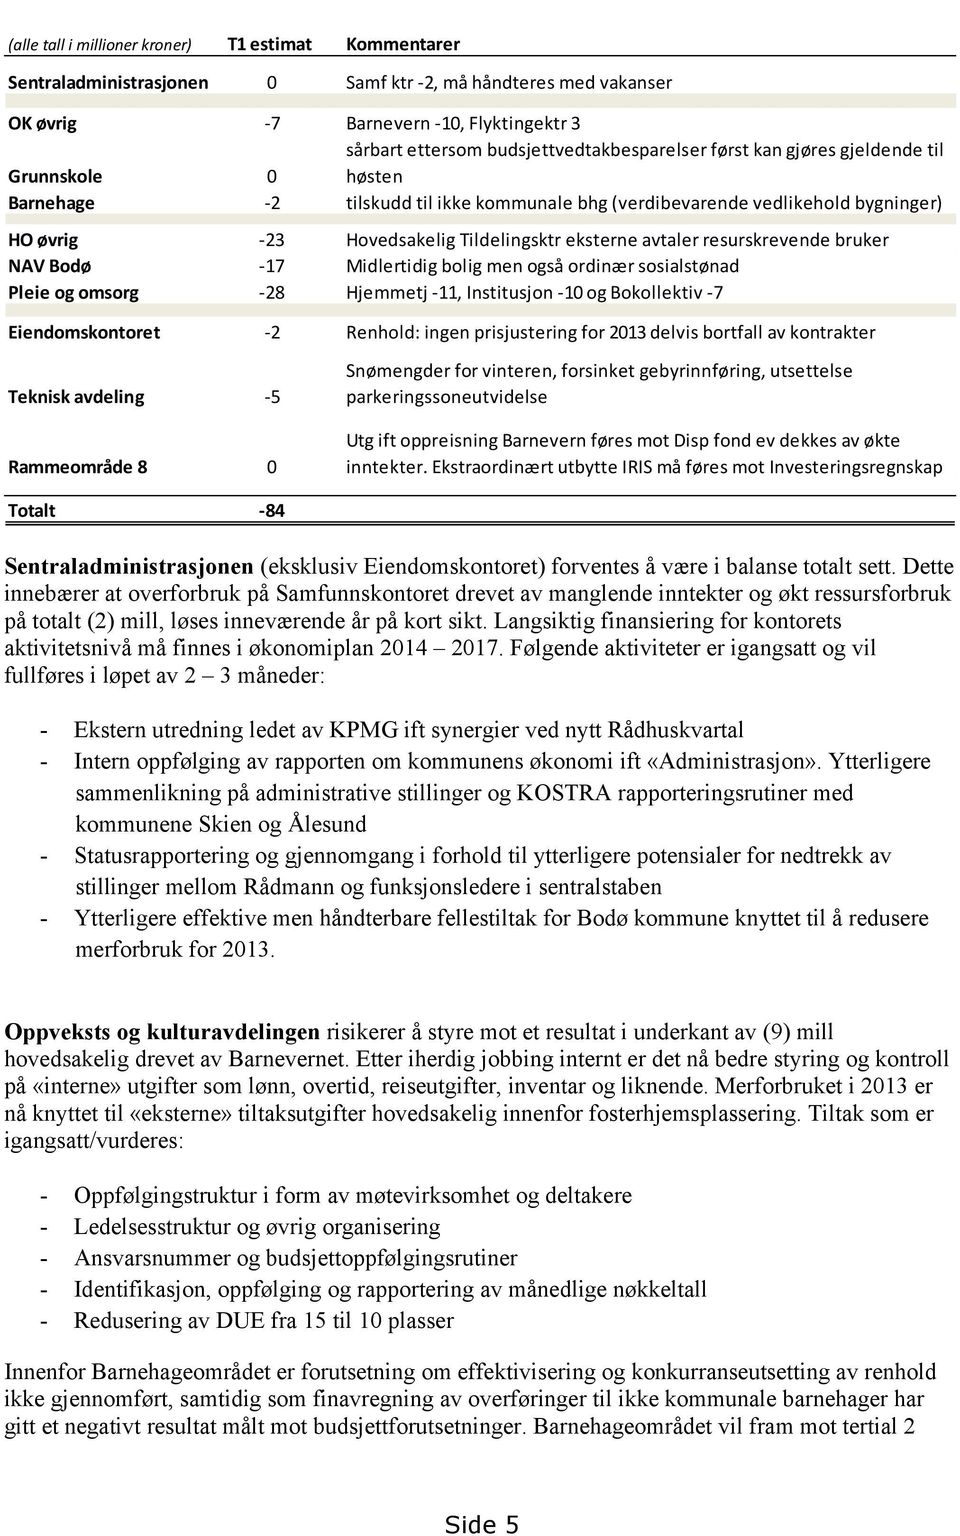 avtaler resurskrevende bruker NAV Bodø -17 Midlertidig bolig men også ordinær sosialstønad Pleie og omsorg -28 Hjemmetj -11, Institusjon -10 og Bokollektiv -7 Eiendomskontoret -2 Renhold: ingen